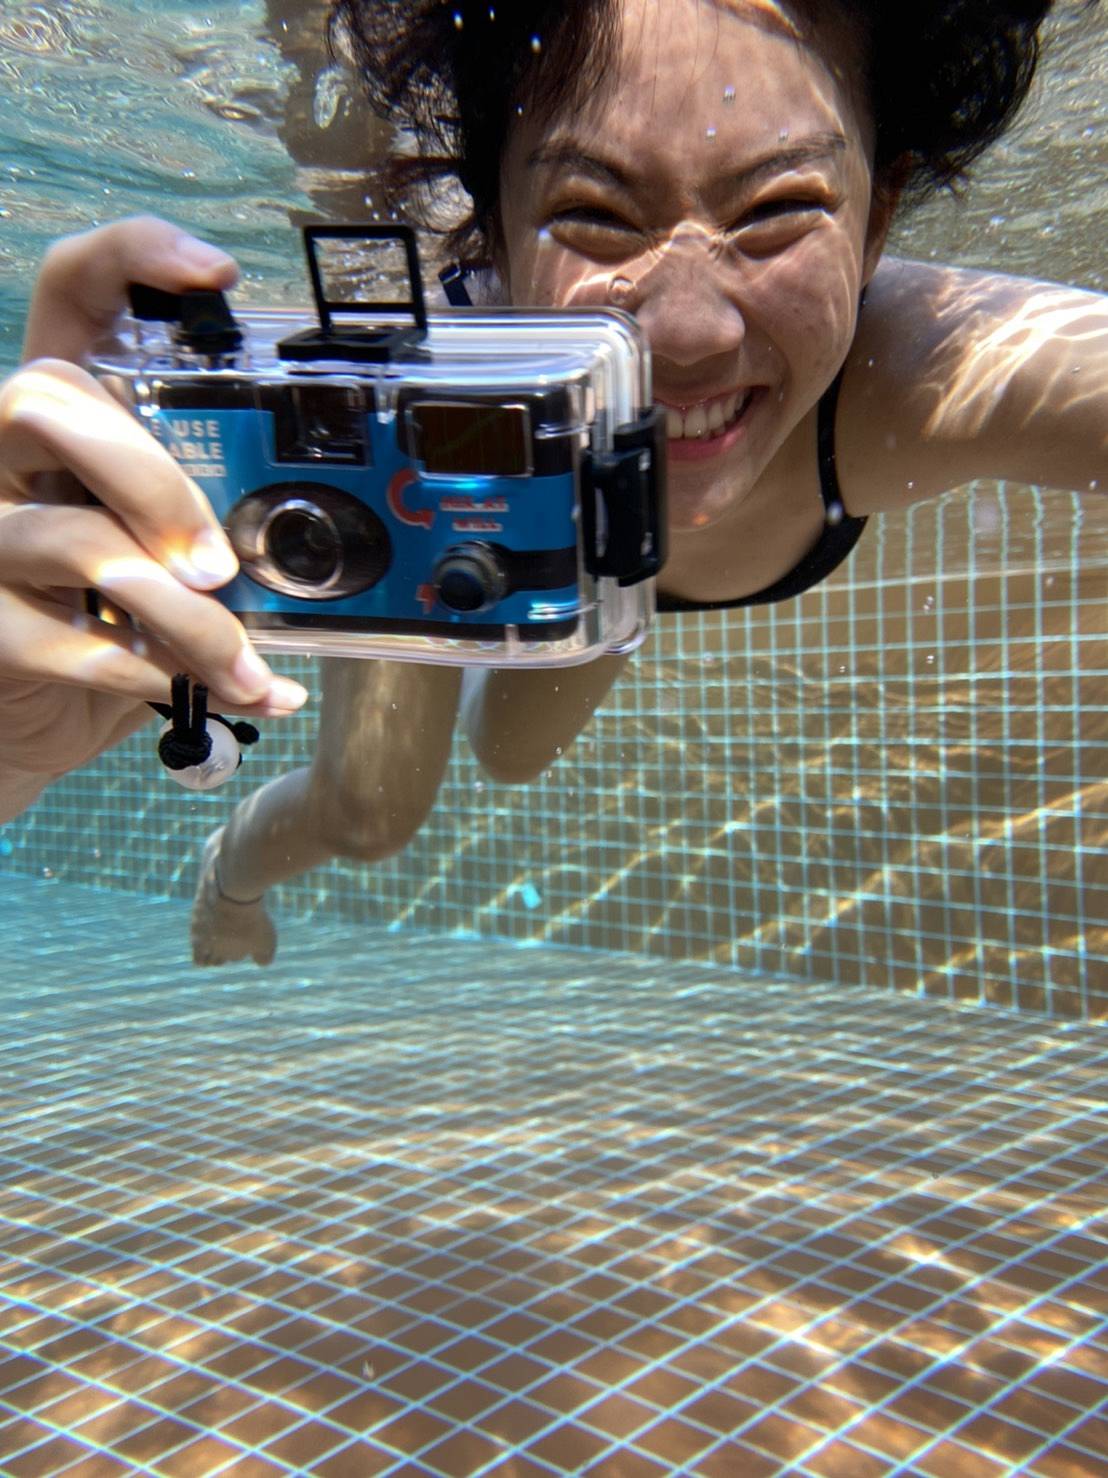 심플 유즈 다회용 필름 카메라 아날로그 아쿠아 에디션으로 수심 10m 밑까지 신비로운 바닷 속 사진 촬영